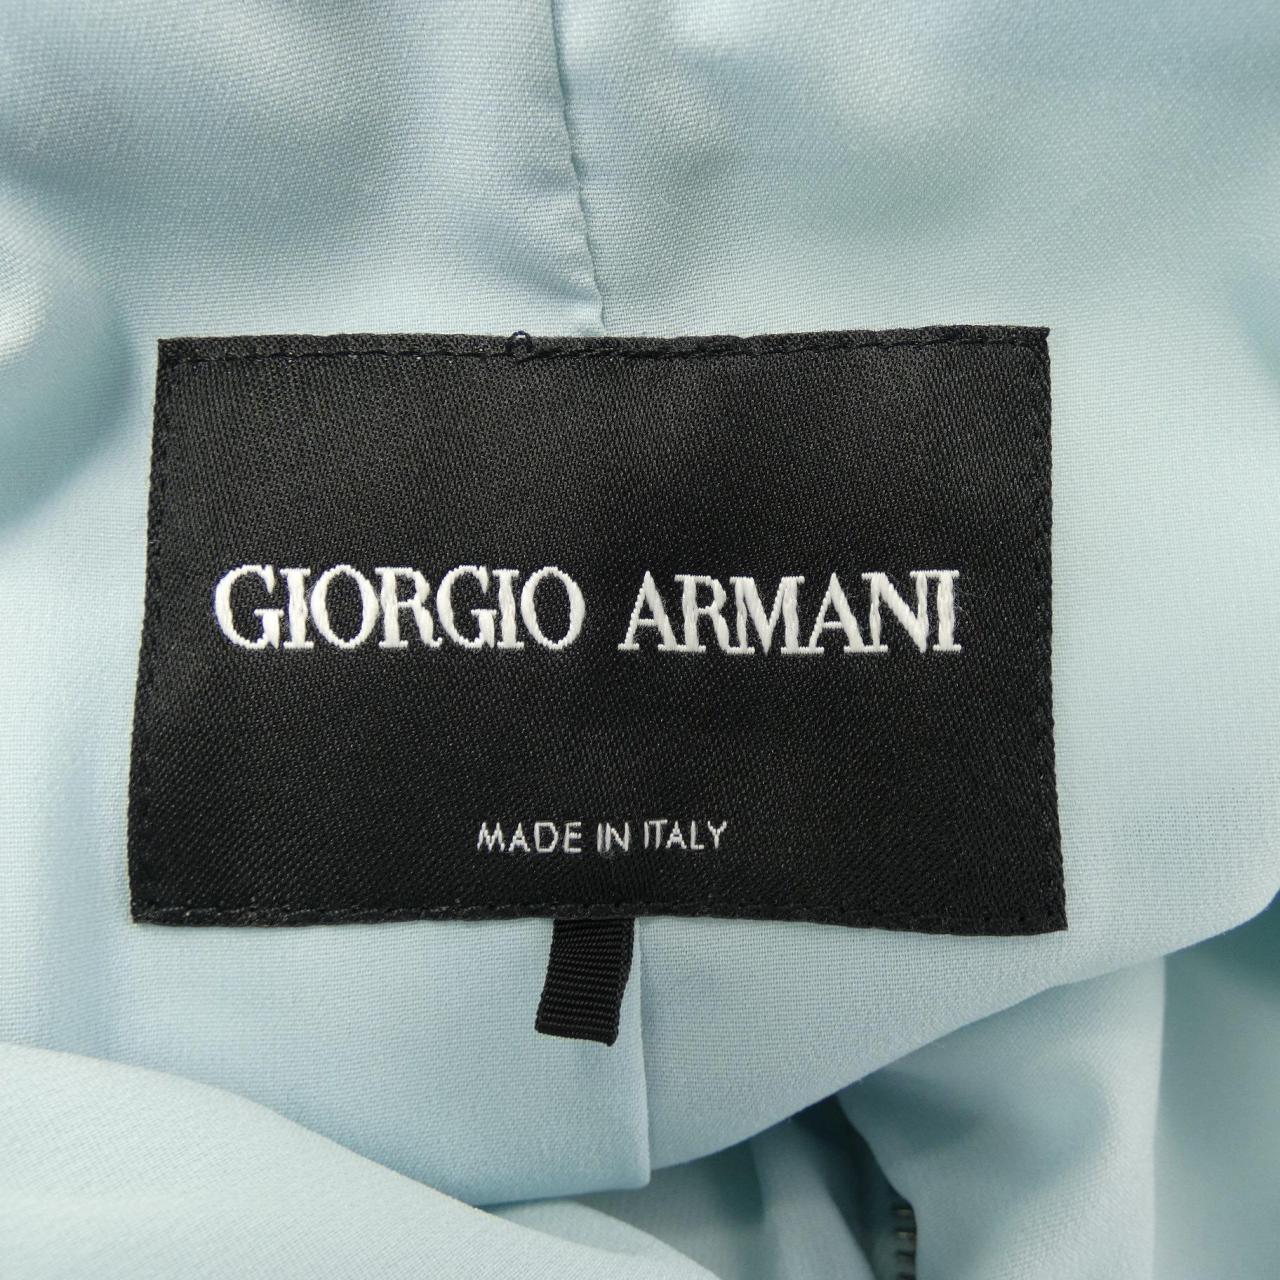 Giorgio Armani GIORGIO ARMANI collarless jacket